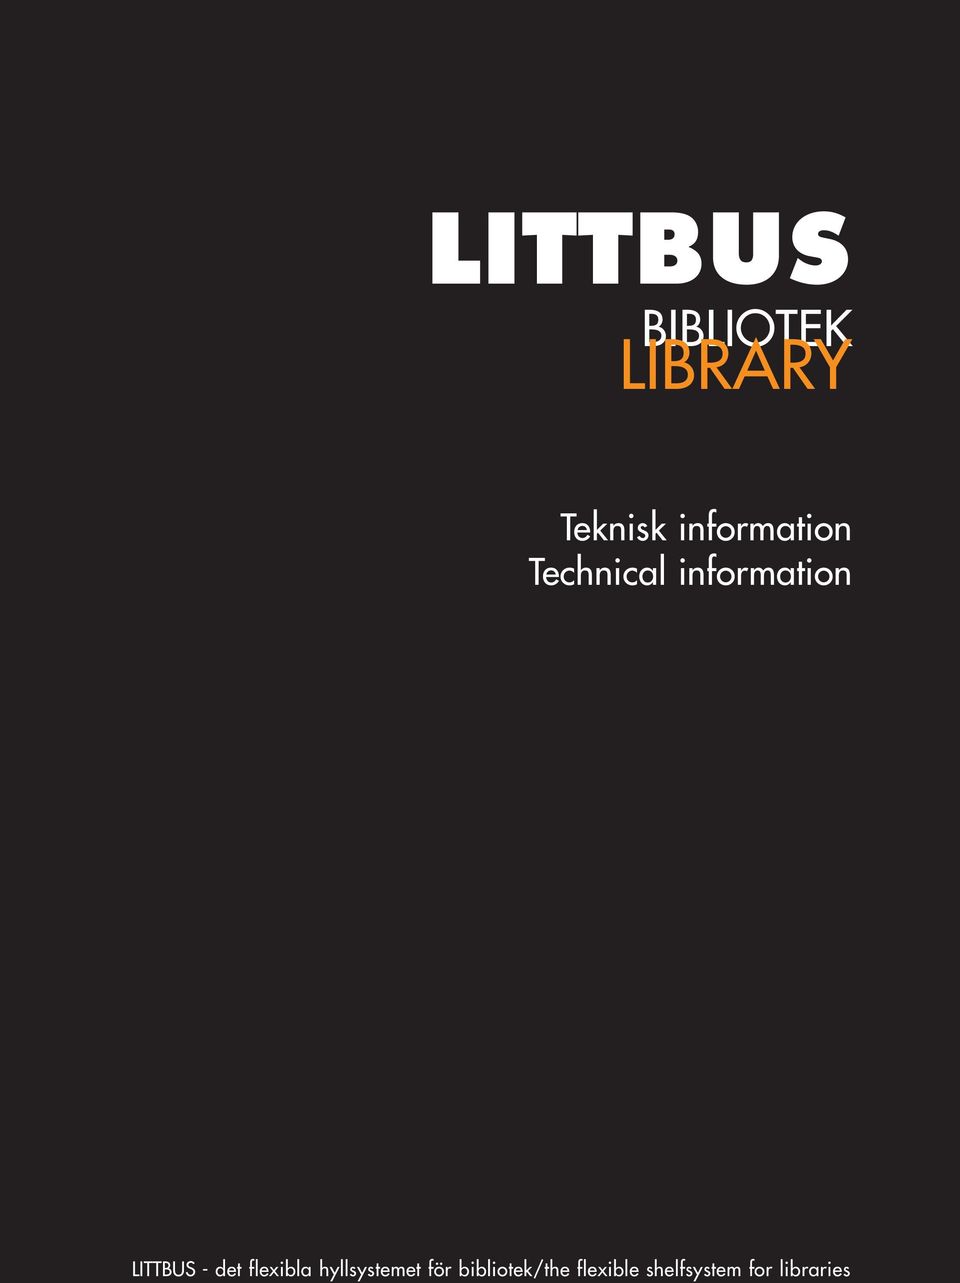 LITTBUS - det flexibla hyllsystemet